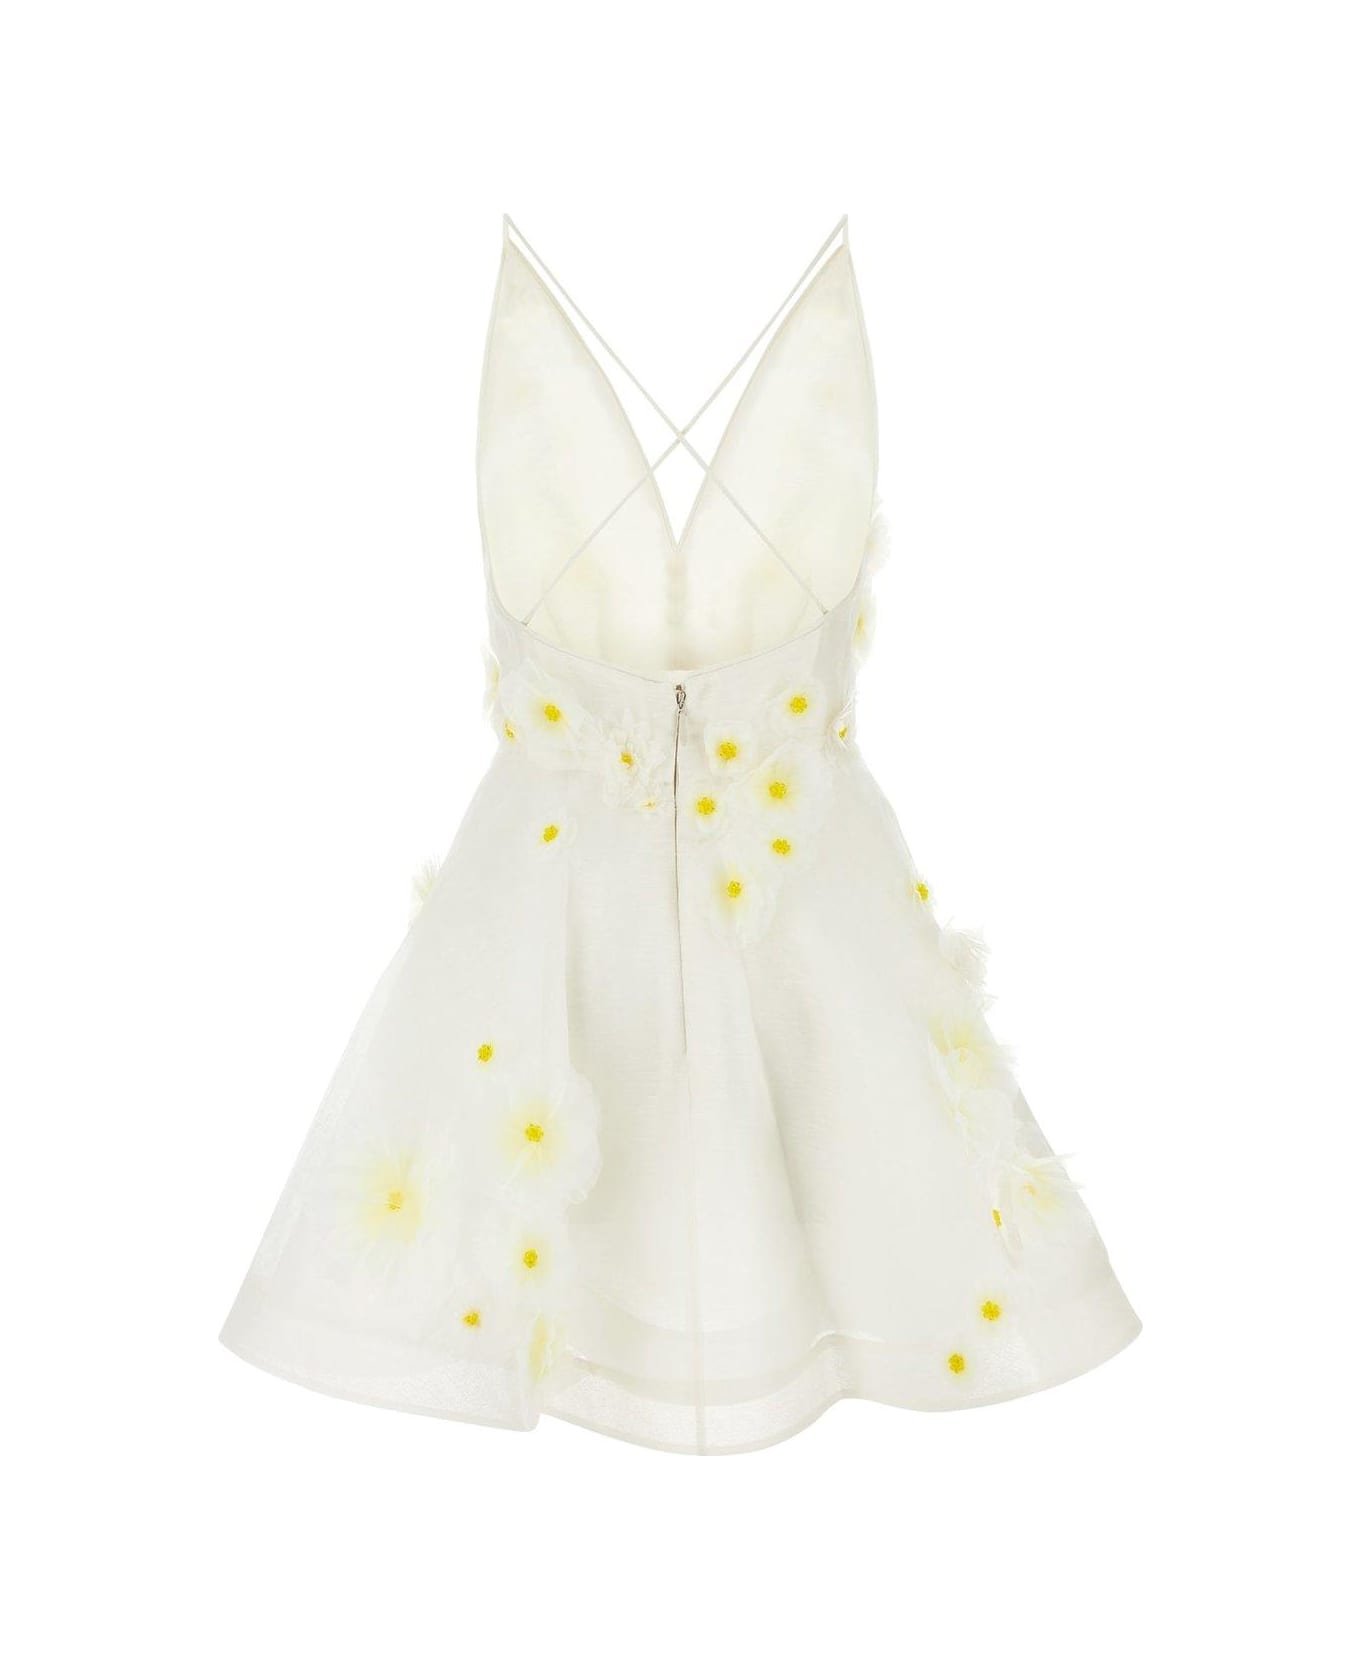 Zimmermann Matchmaker Daisy Mini Dress - WHITE/YELLOW